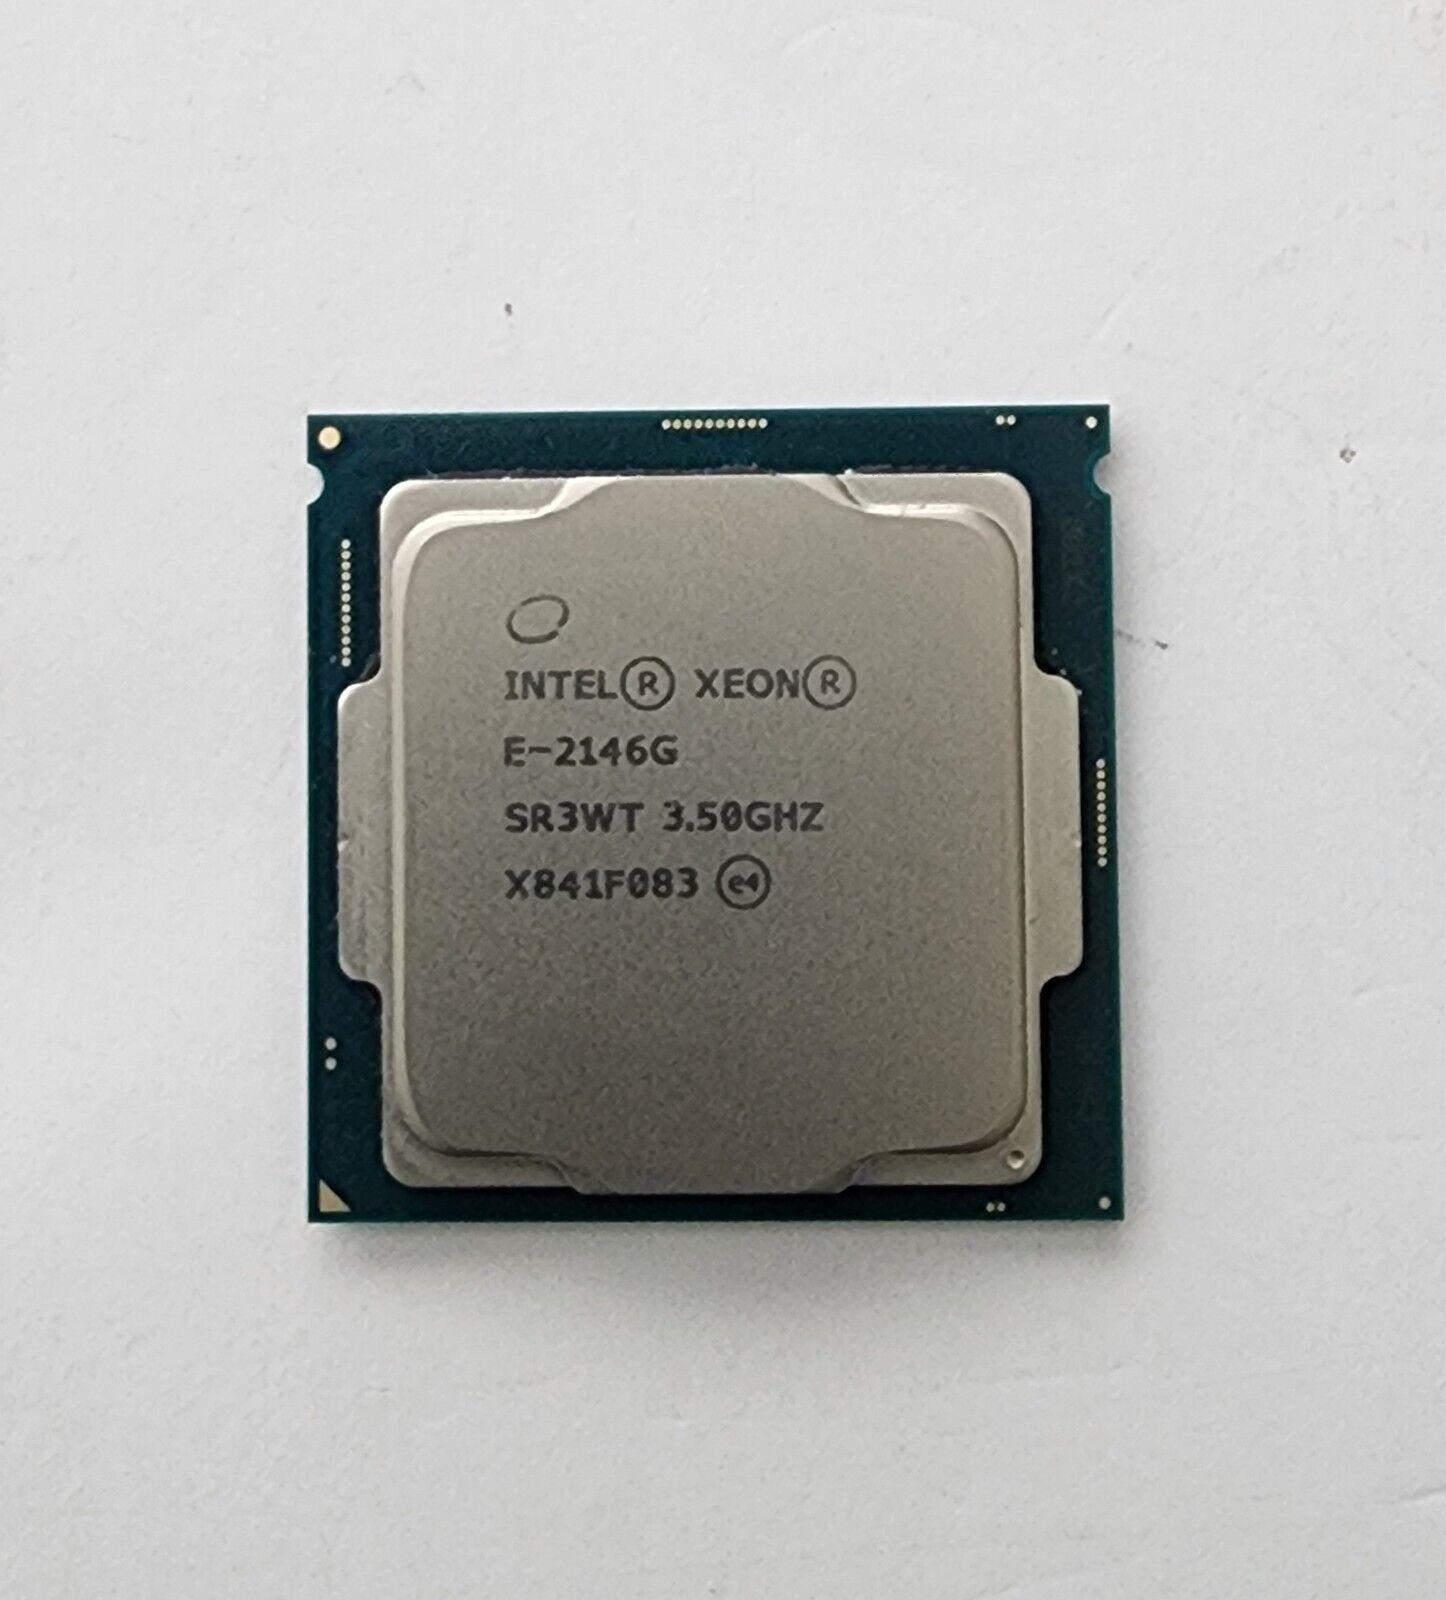 Intel Xeon E-2146G 6 Core 3.50GHz LGA 1151  SR3WT